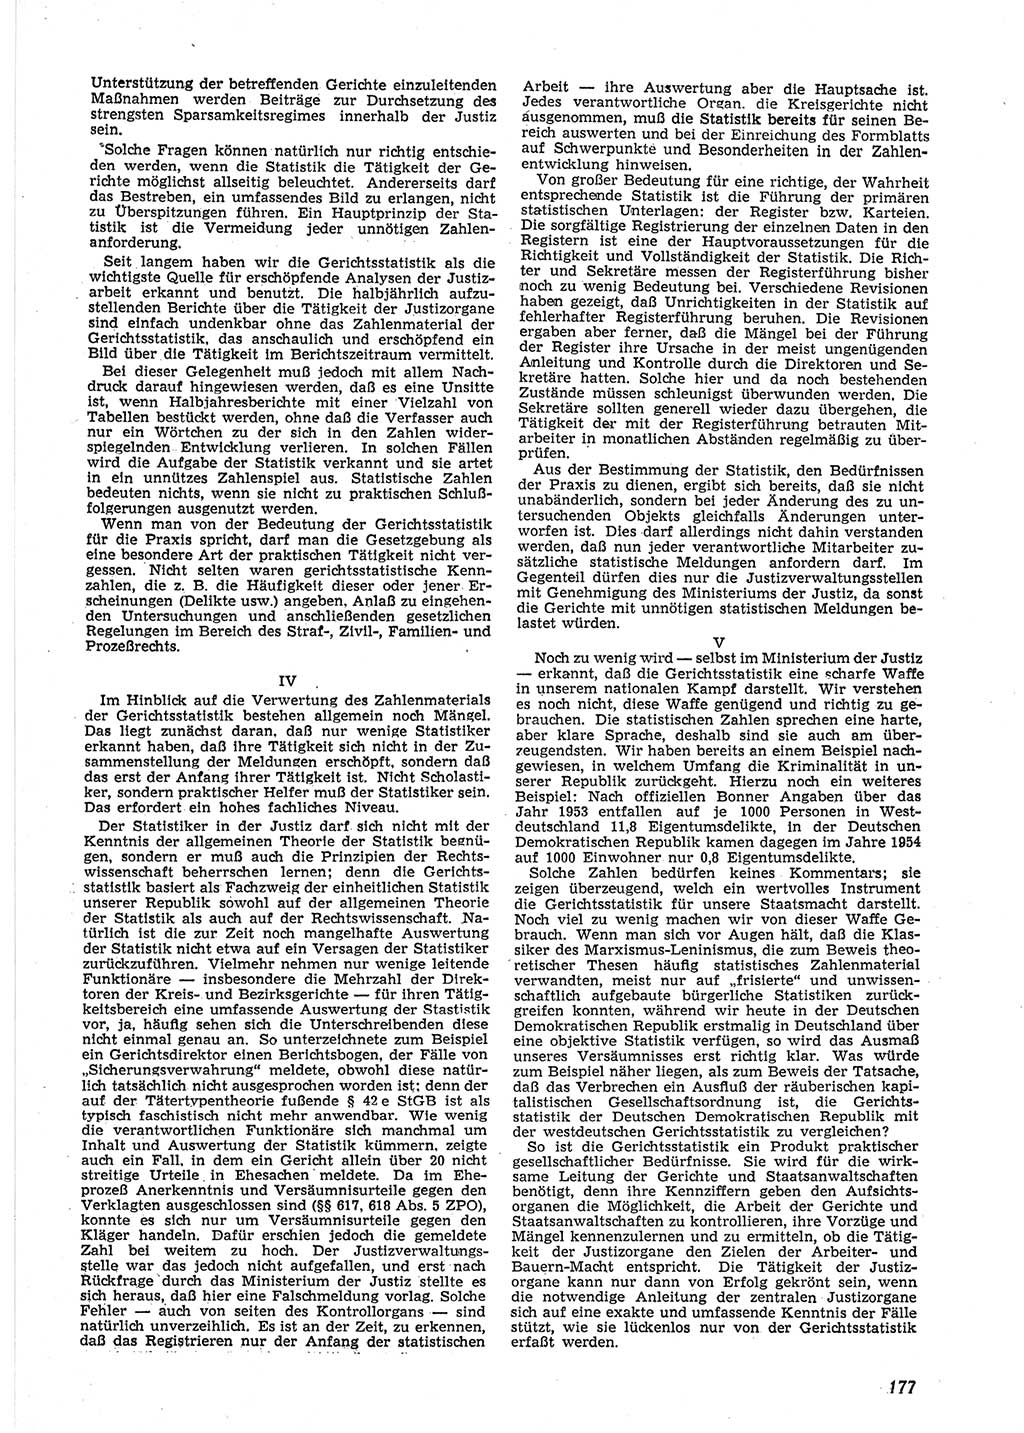 Neue Justiz (NJ), Zeitschrift für Recht und Rechtswissenschaft [Deutsche Demokratische Republik (DDR)], 9. Jahrgang 1955, Seite 177 (NJ DDR 1955, S. 177)